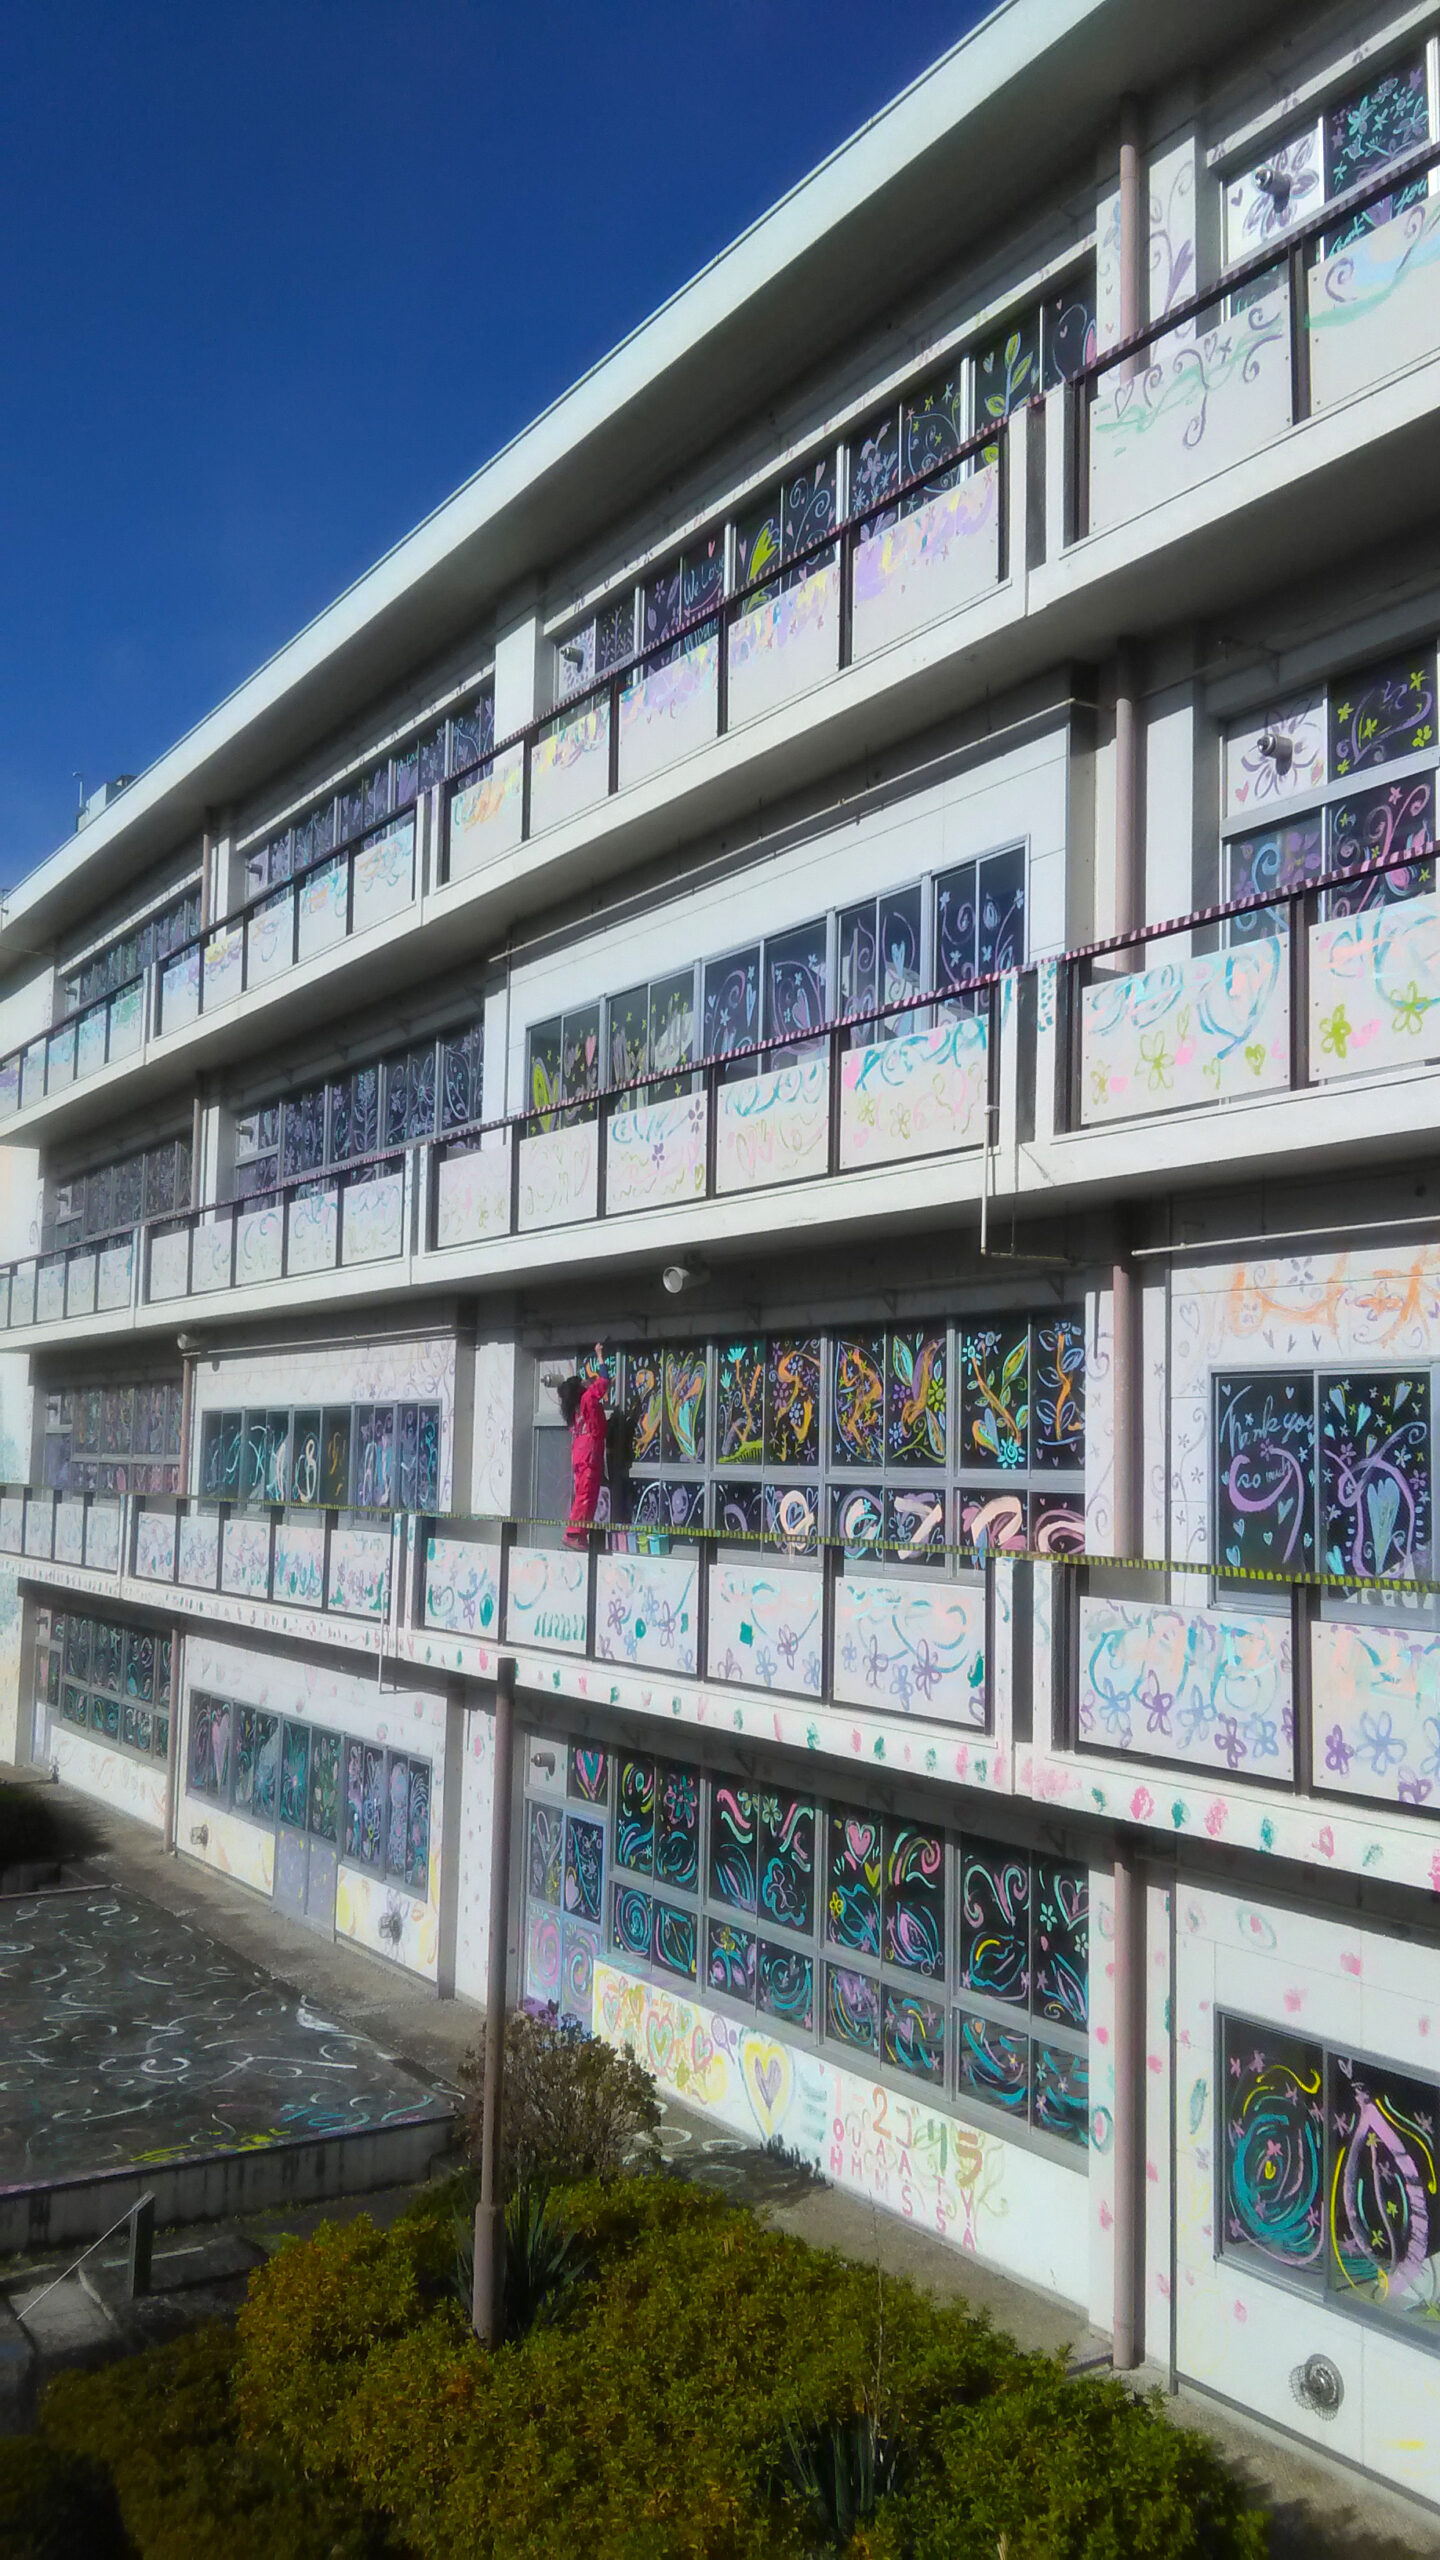 旧校舎取り壊し前の約1カ月間、卒業生が自由に彩色できるようにペンキを設置。「校舎に感謝の花束を」という想いを込めて、外壁や窓に色とりどりの花やハートなどが描かれた。（ワンダーアート提供）